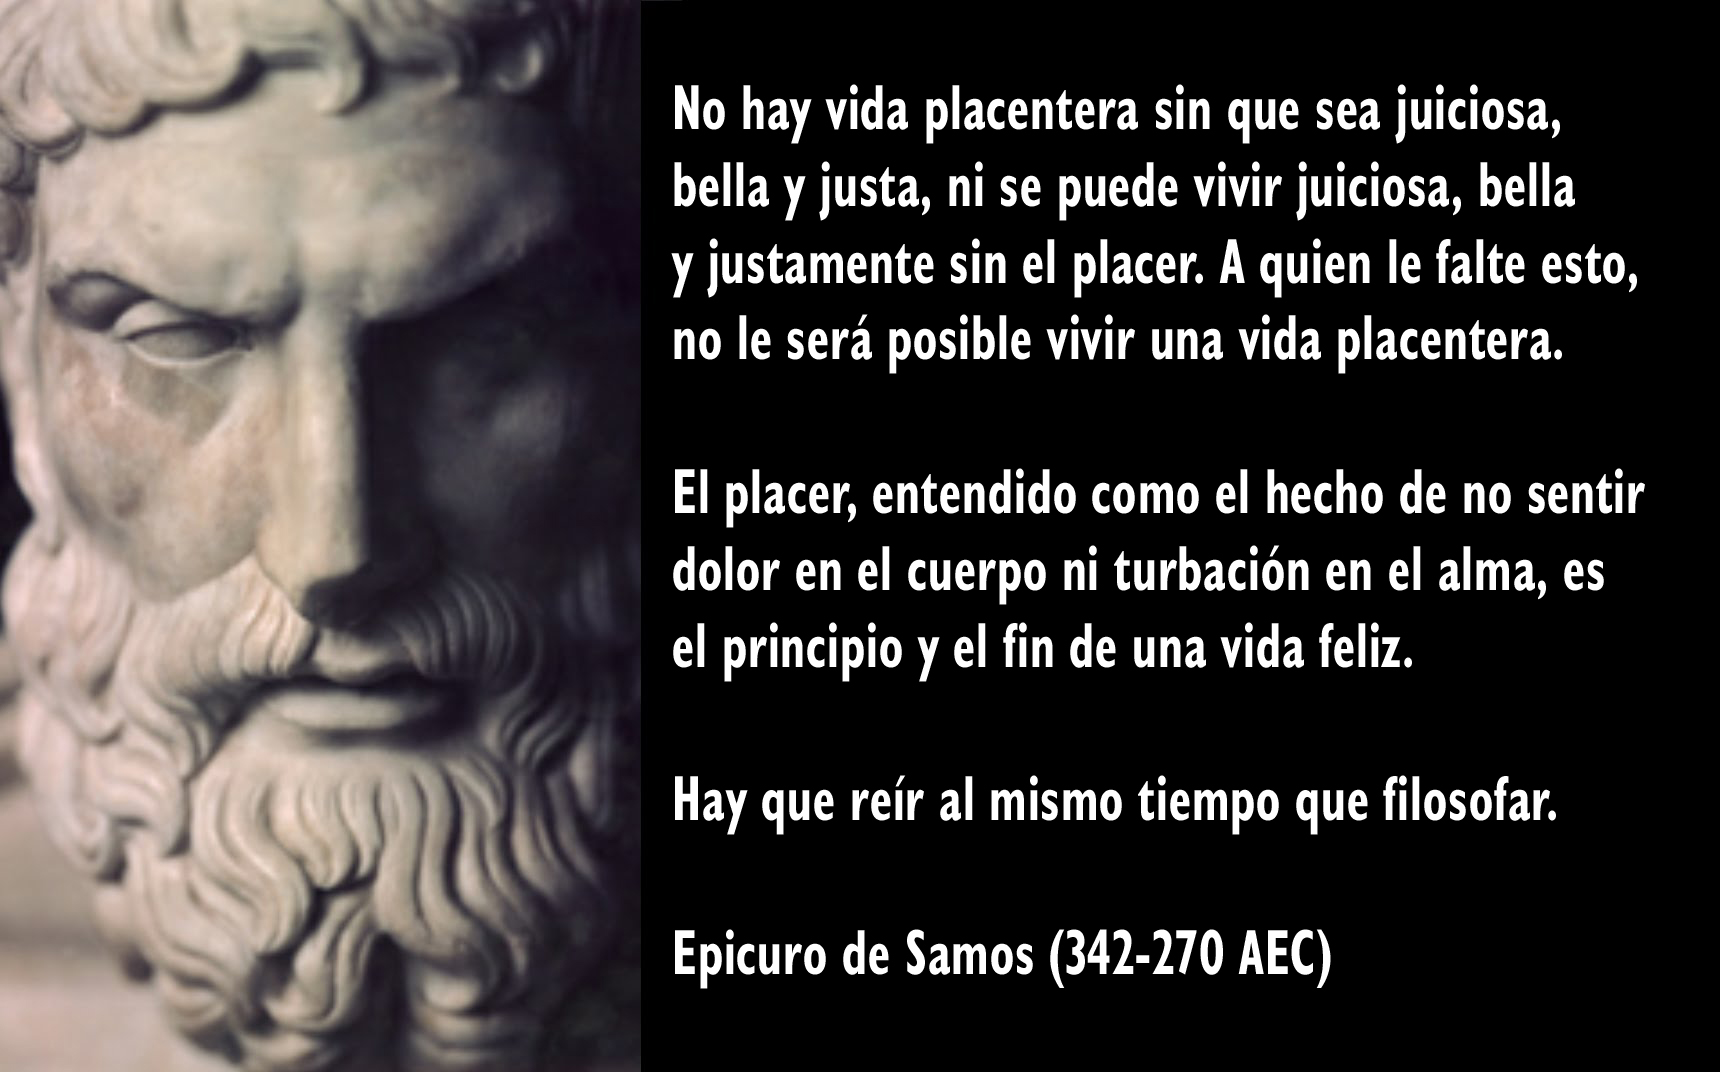 Se dice que Epicuro de Samos escribió unas 300 obras, pero son muy pocas las que han sobrevivido: apenas unas tres cartas completas, algunas recopilaciones de máximas, fragmentos aislados y menciones por parte de otros autores.